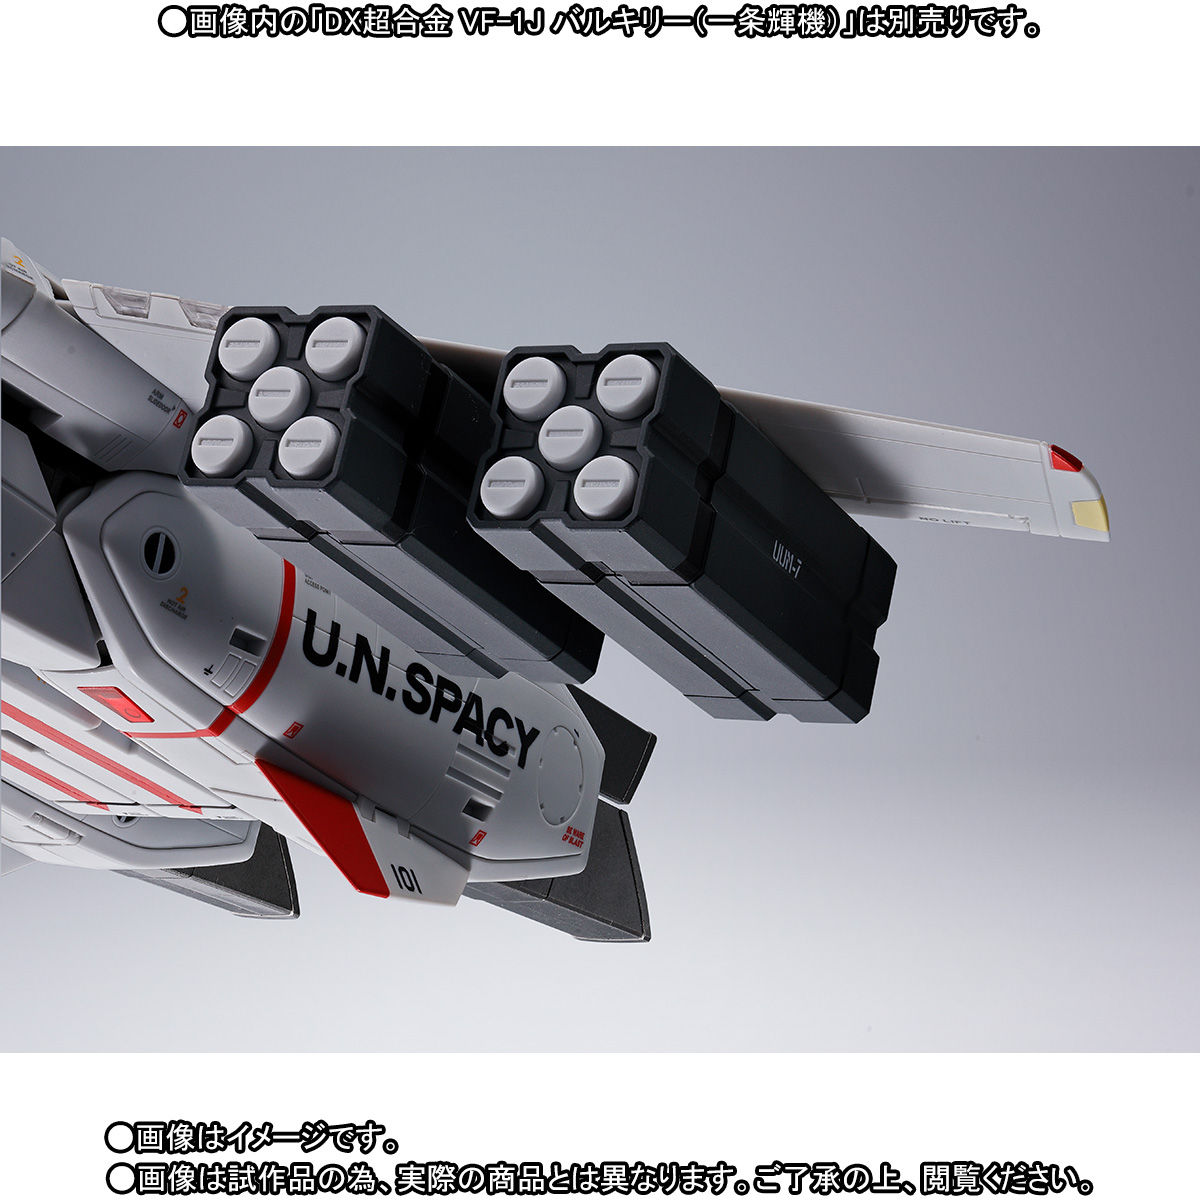 【未開封】DX超合金 VF-1対応ミサイルセット 「超時空要塞マクロス」